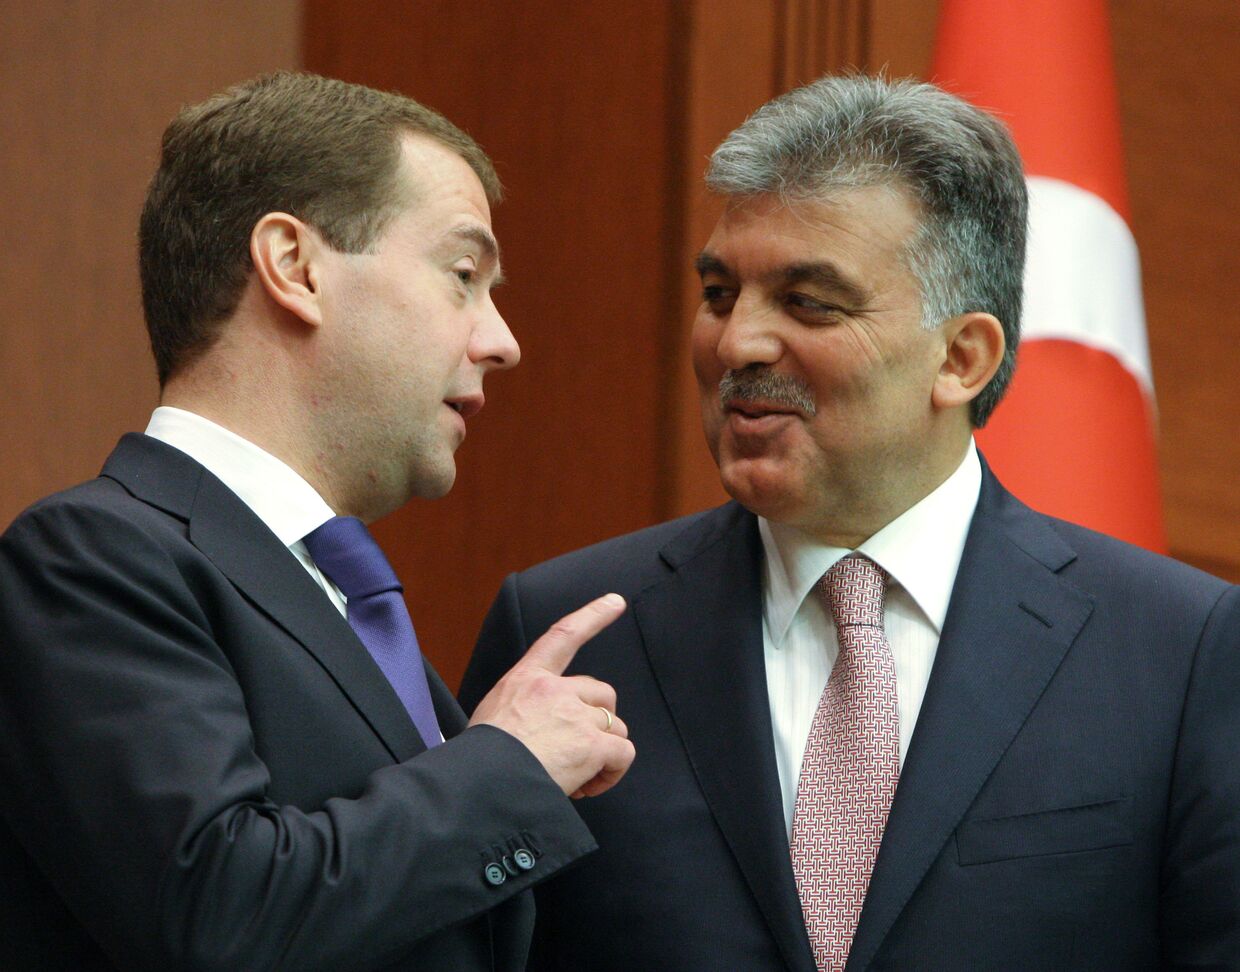 Д.Медведев на церемонии подписания совместных документов по итогам российско-турецких переговоров в Анкаре